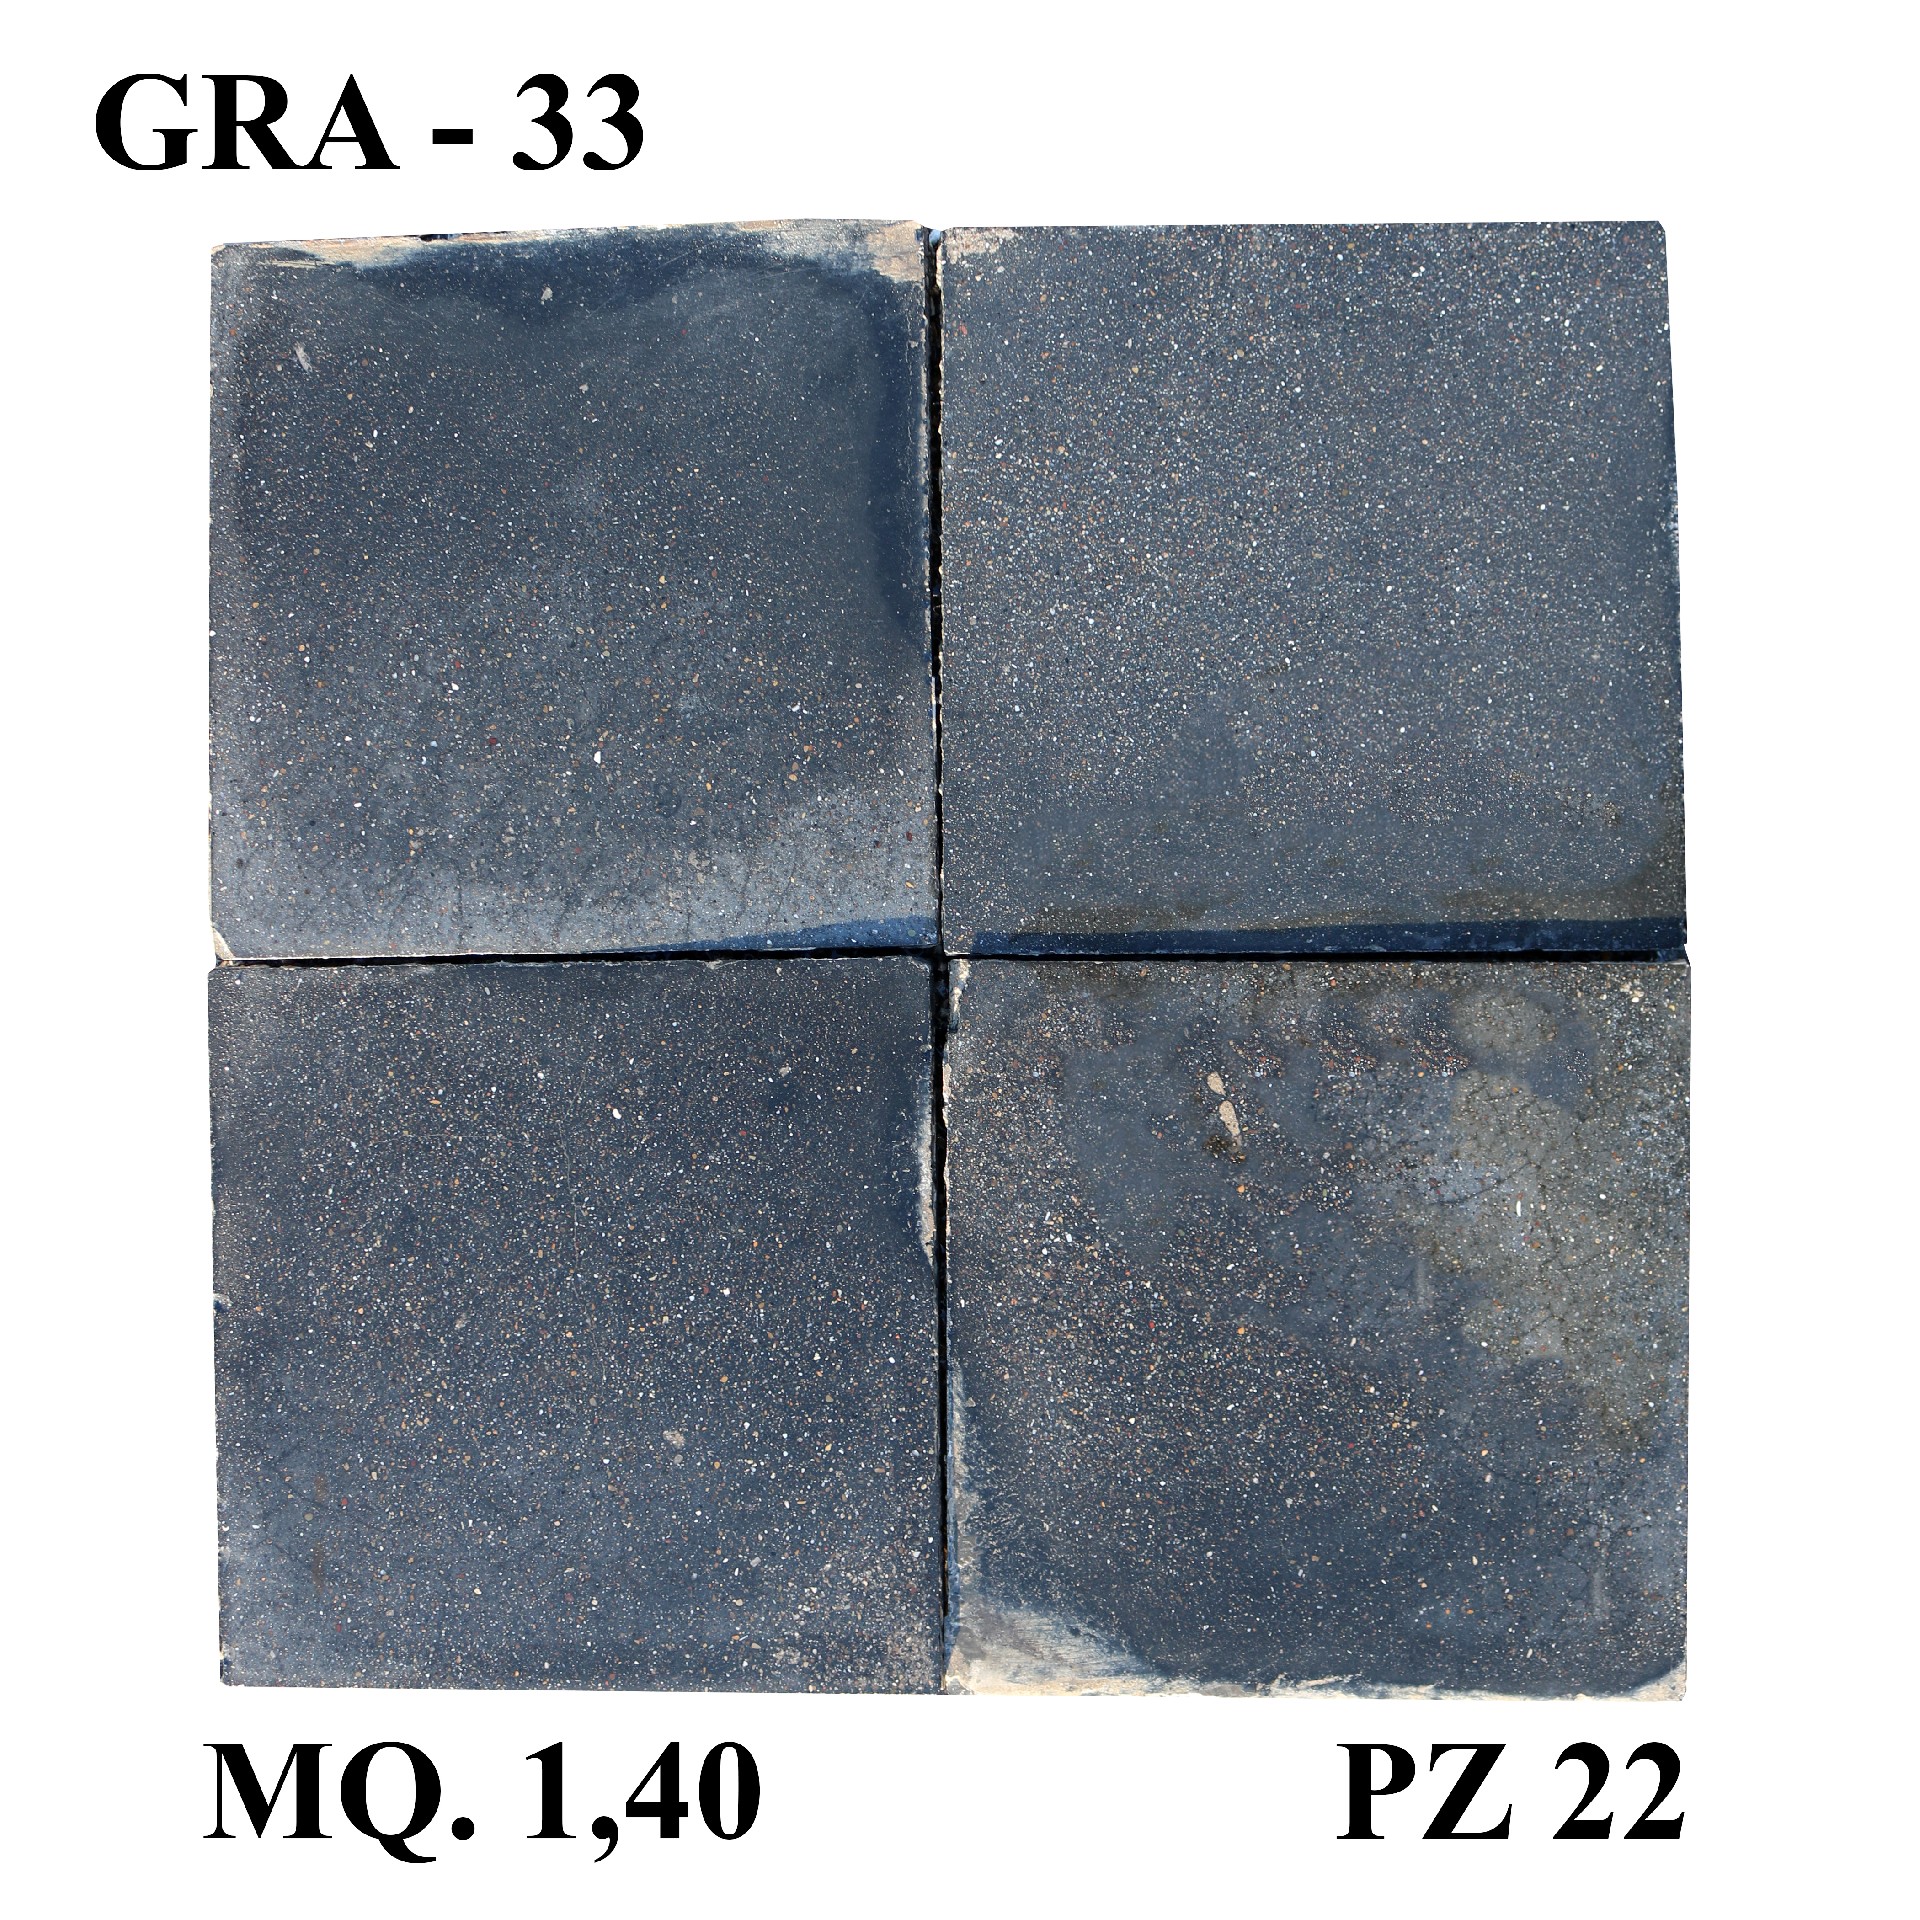 Antica pavimentazione in graniglia cm 25x25 - Cementine e Graniglie - Pavimentazioni Antiche - Prodotti - Antichità Fiorillo